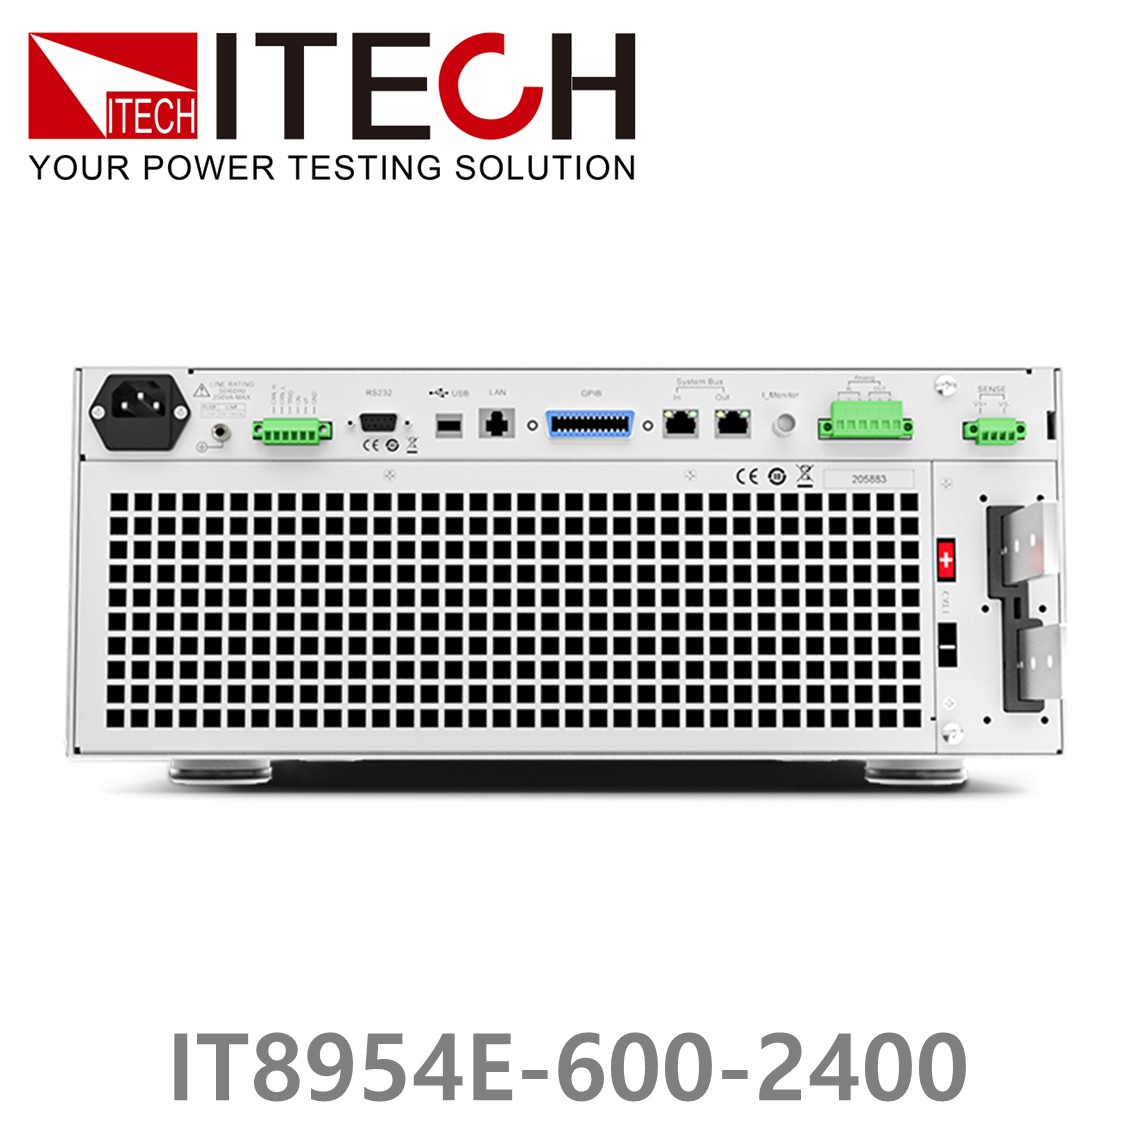 [ ITECH ] IT8954E-600-2400  고성능 고전력 DC 전자로드 600V/2400A/54kW (37U)